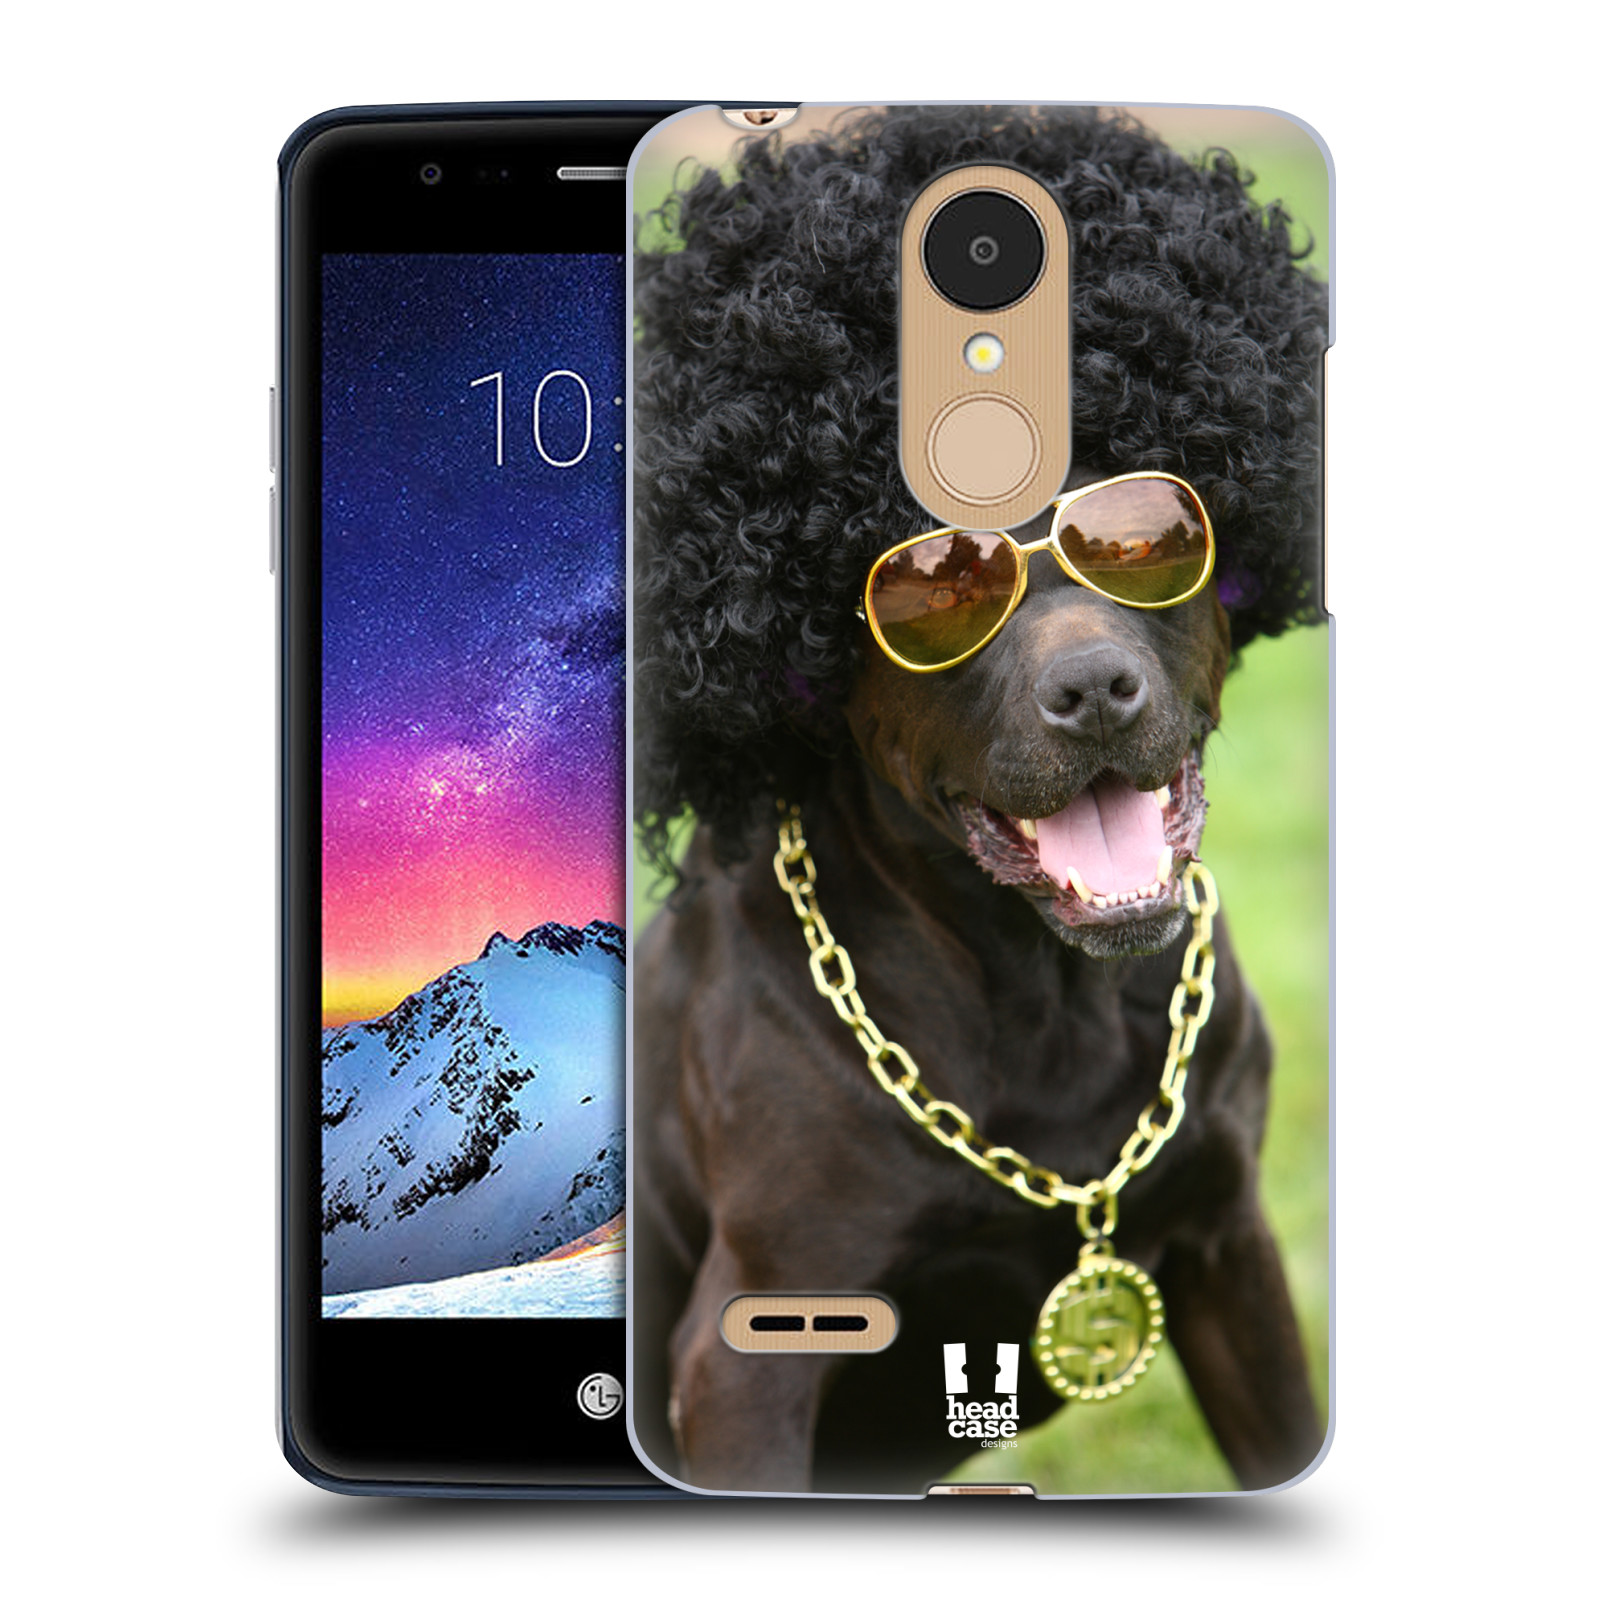 HEAD CASE plastový obal na mobil LG K9 / K8 2018 vzor Legrační zvířátka pejsek boháč